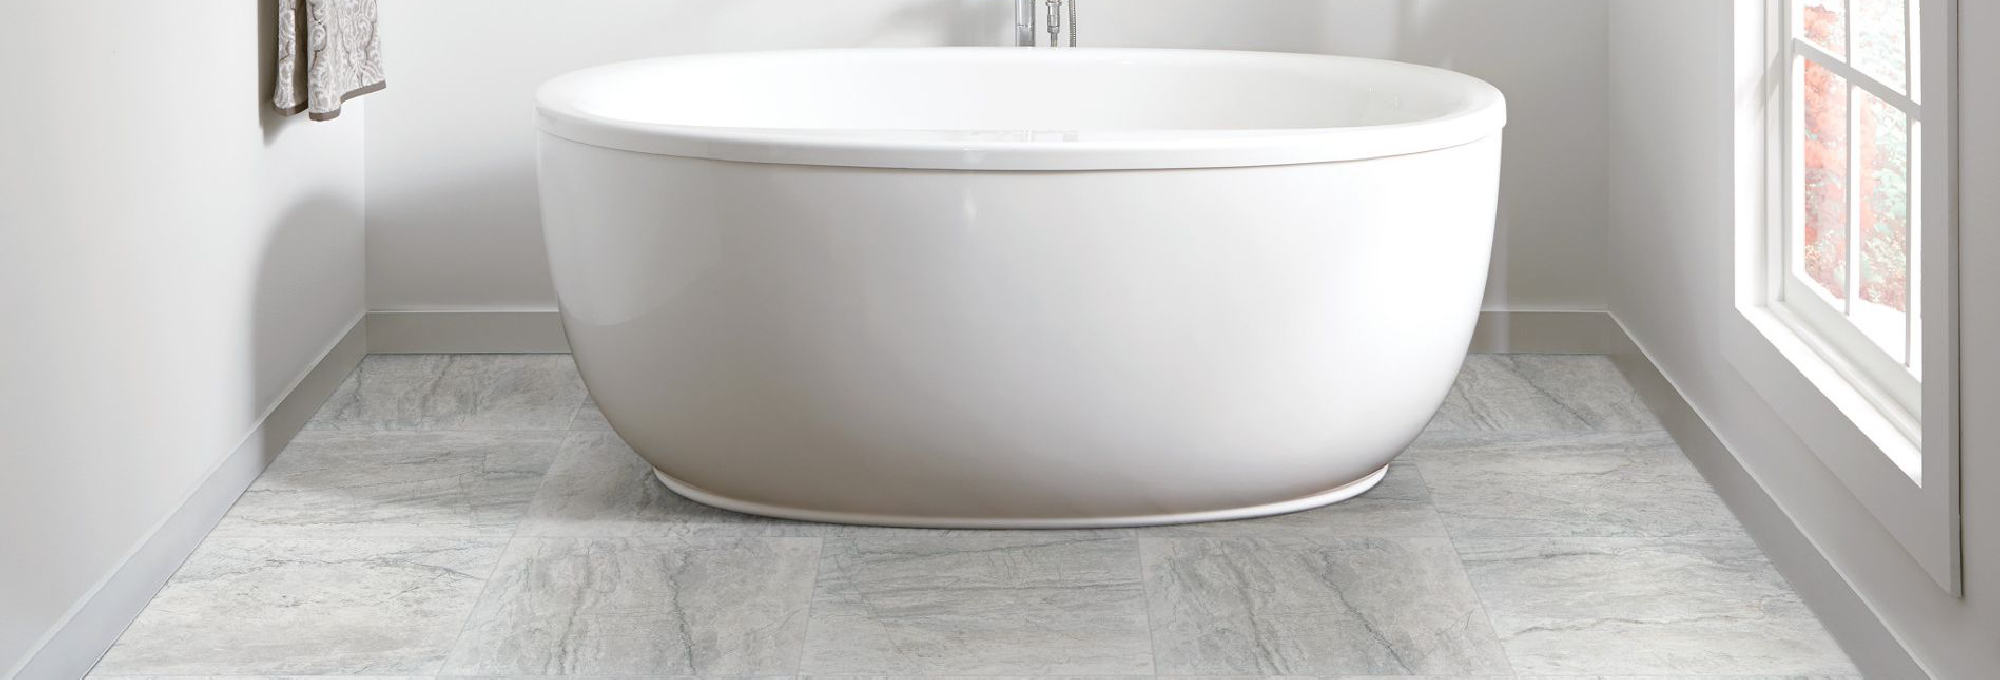 white bathtub on light grey tile floor